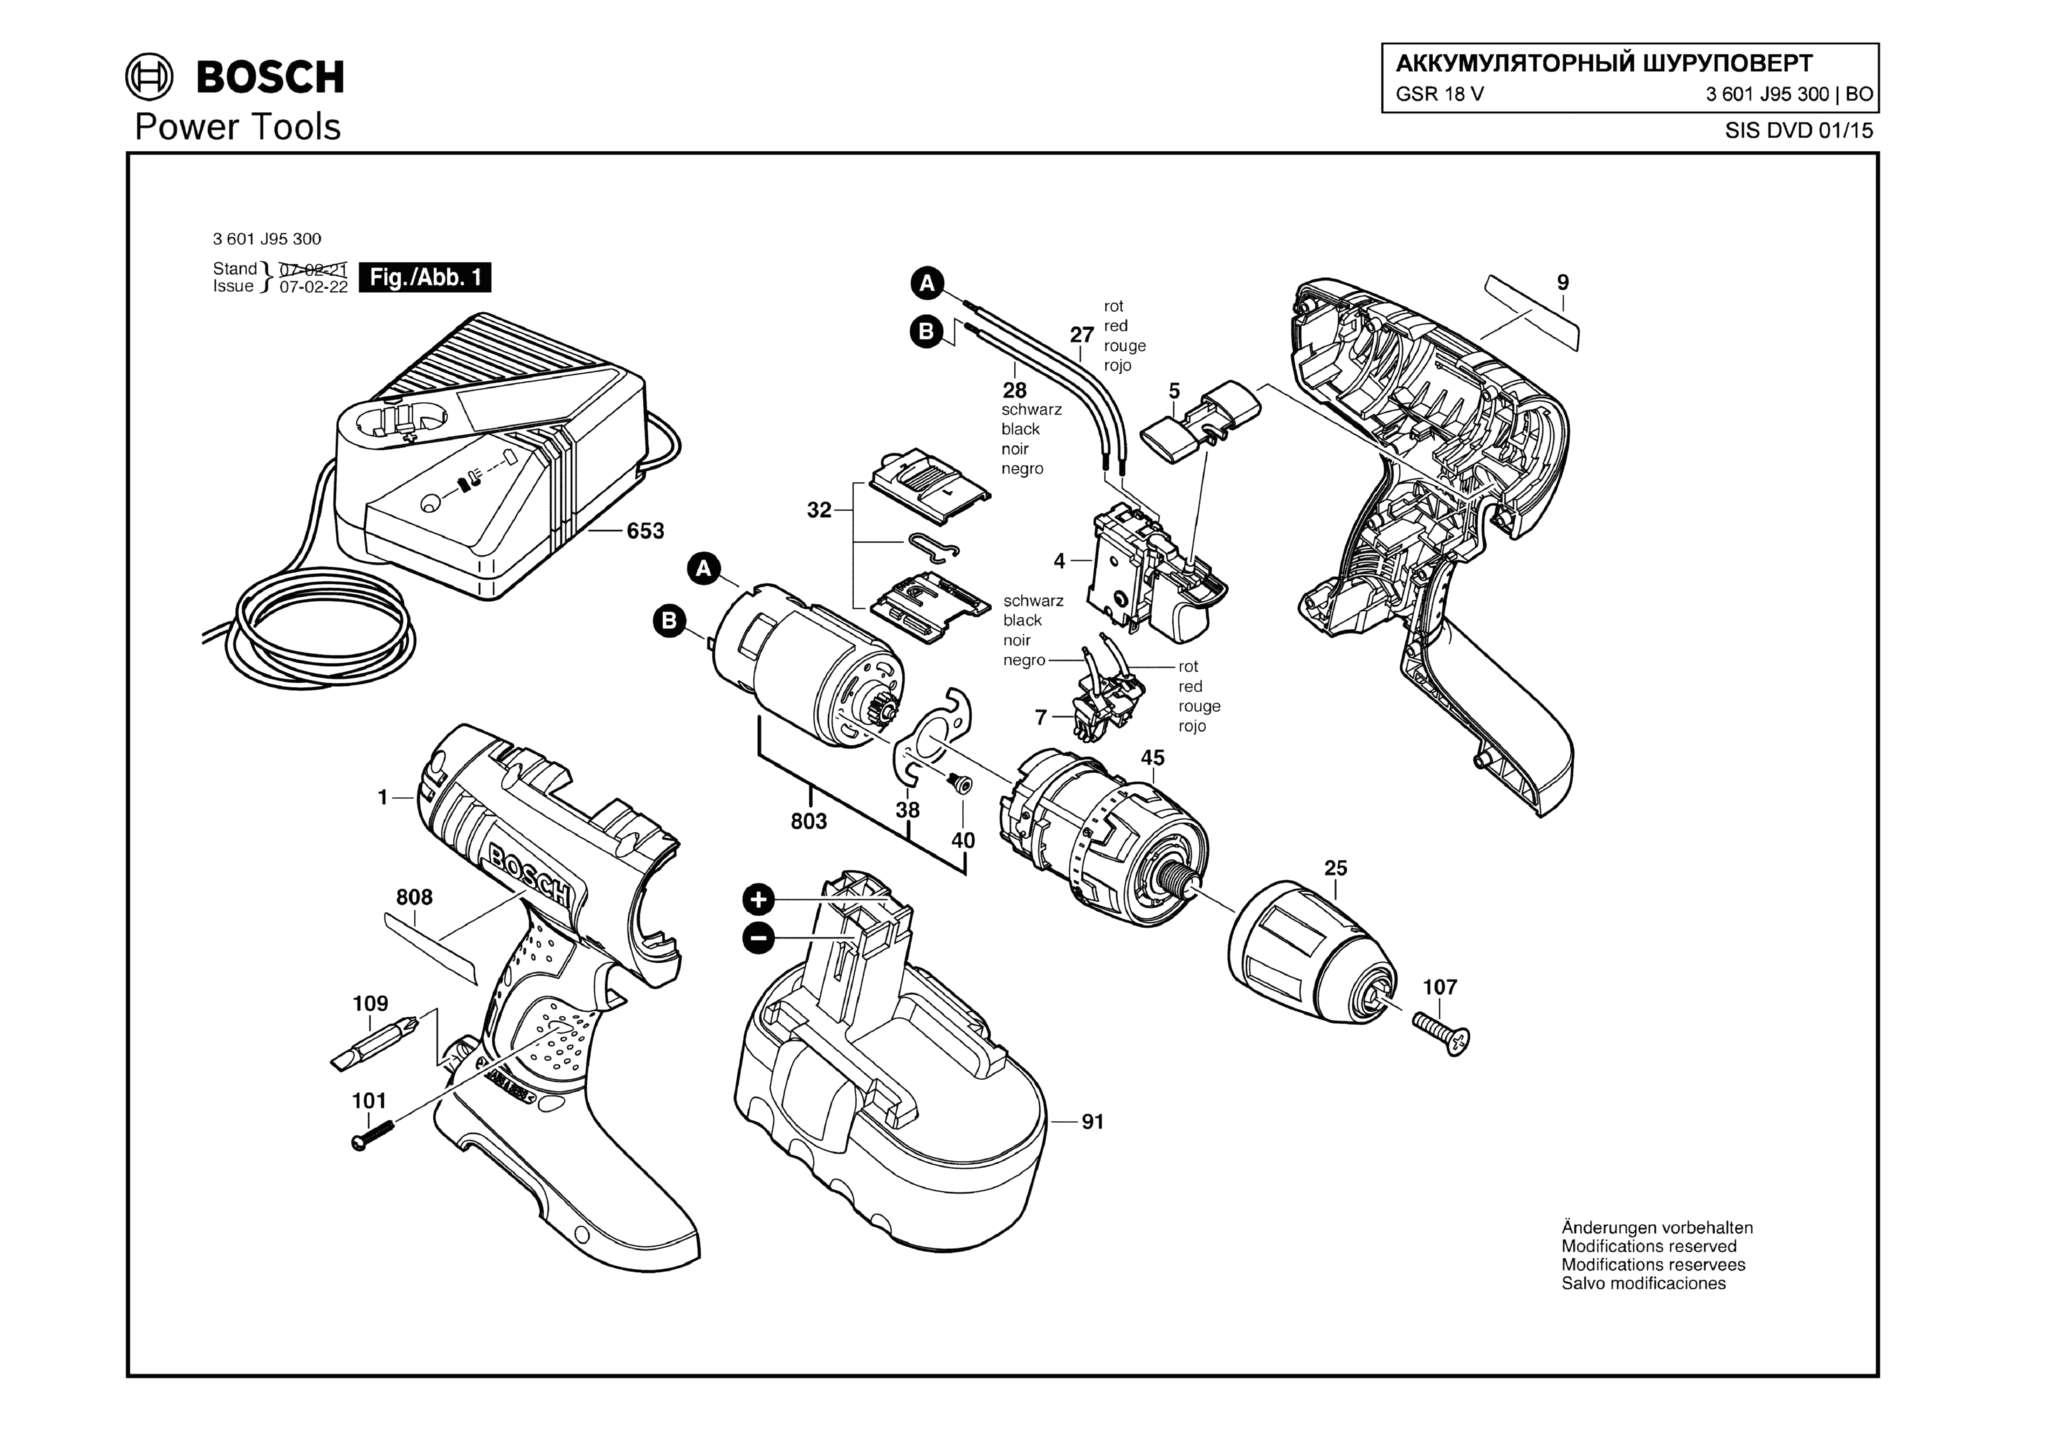 Запчасти, схема и деталировка Bosch GSR 18 V (ТИП 3601J95300)